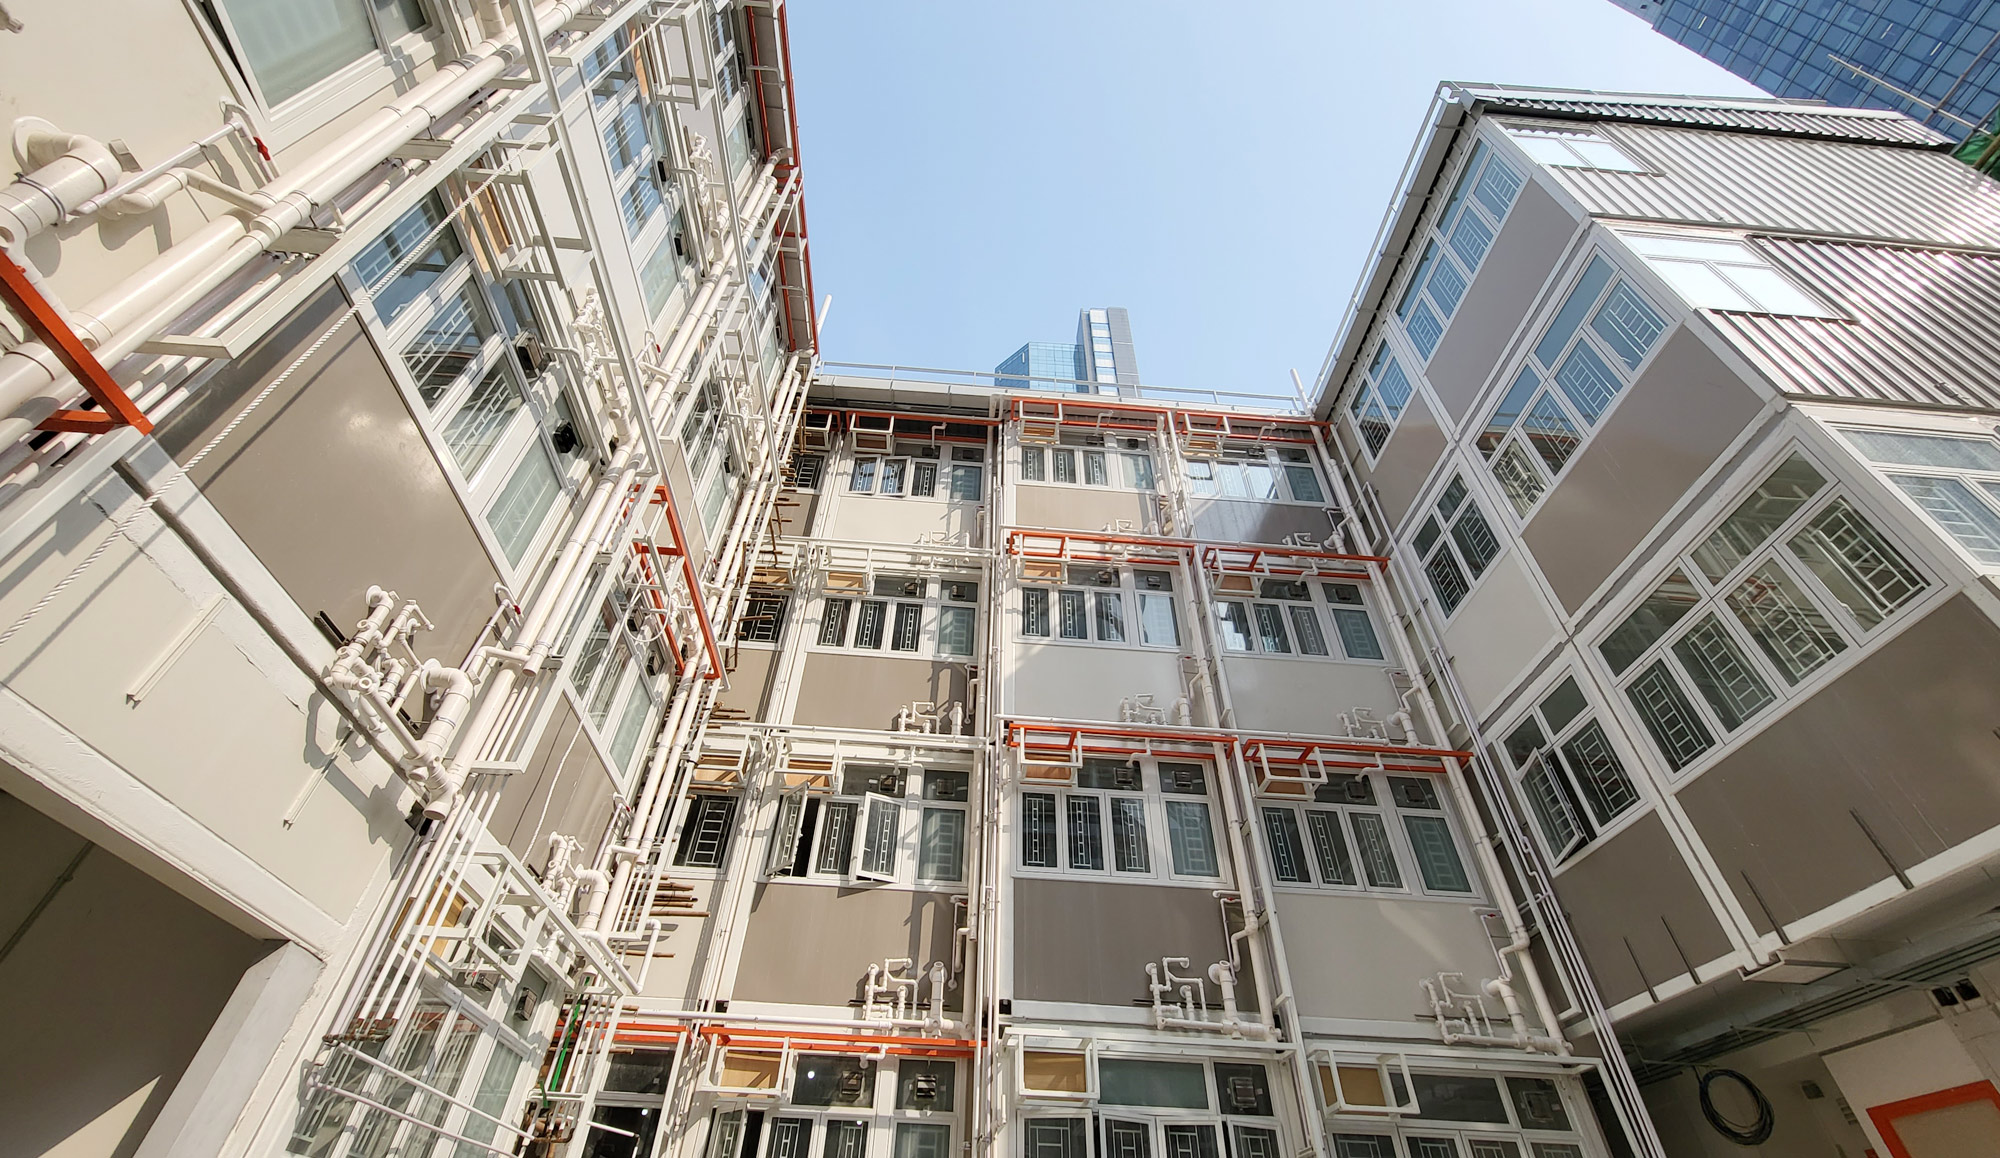 Social Housing Project - Cheung Sha Wan “Shun Ting Terraced Home” 